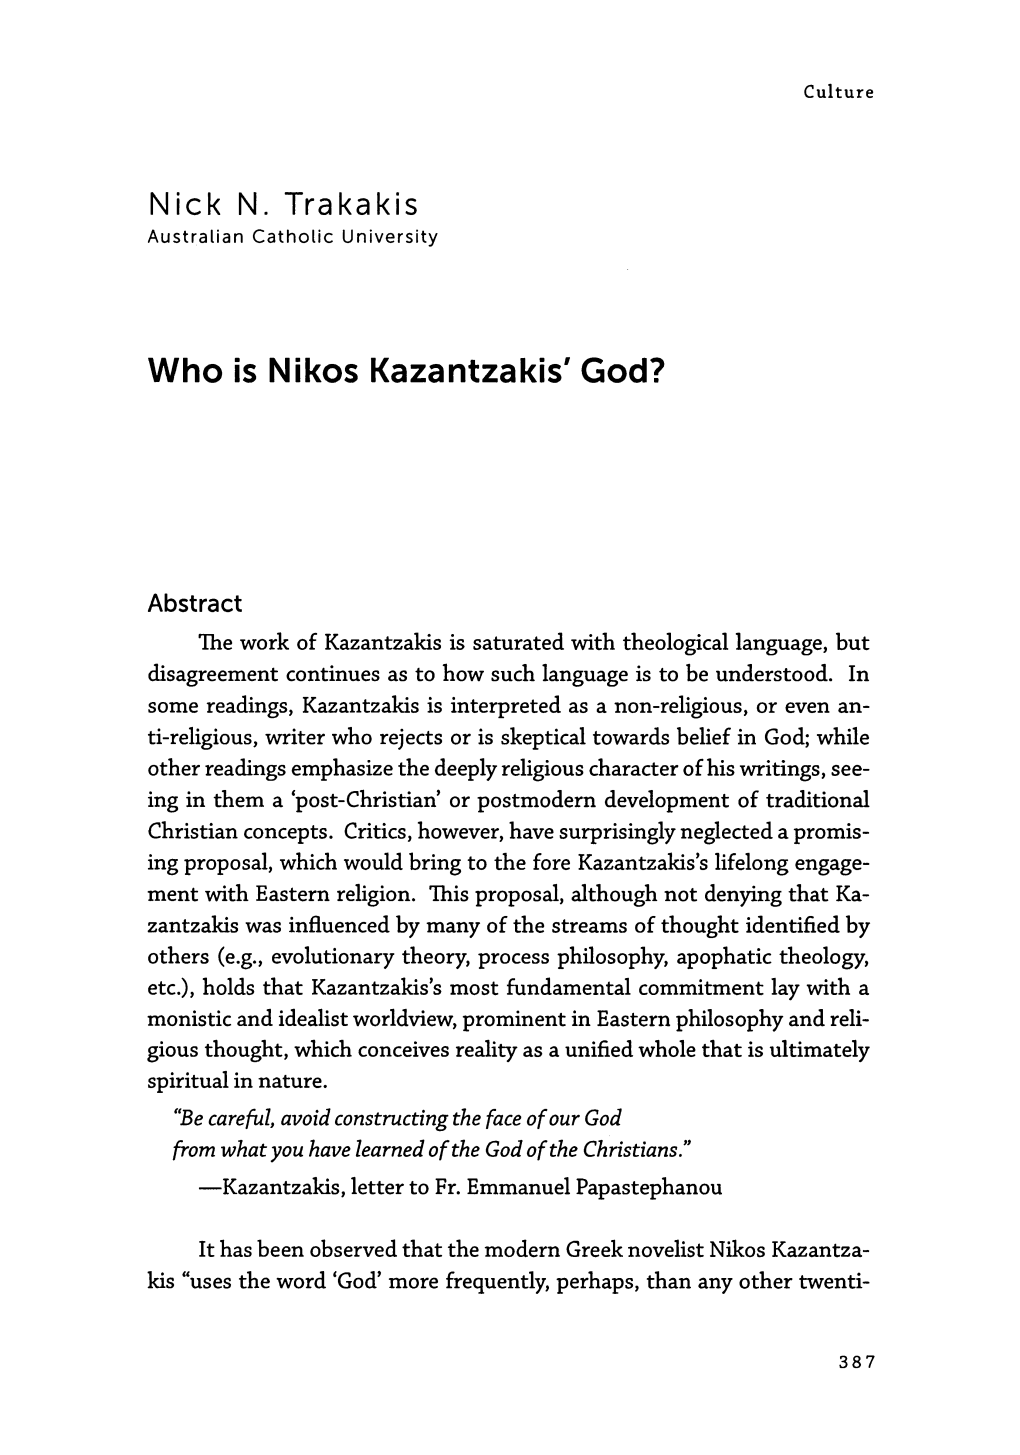 Who Is Nikos Kazantzakis' God?